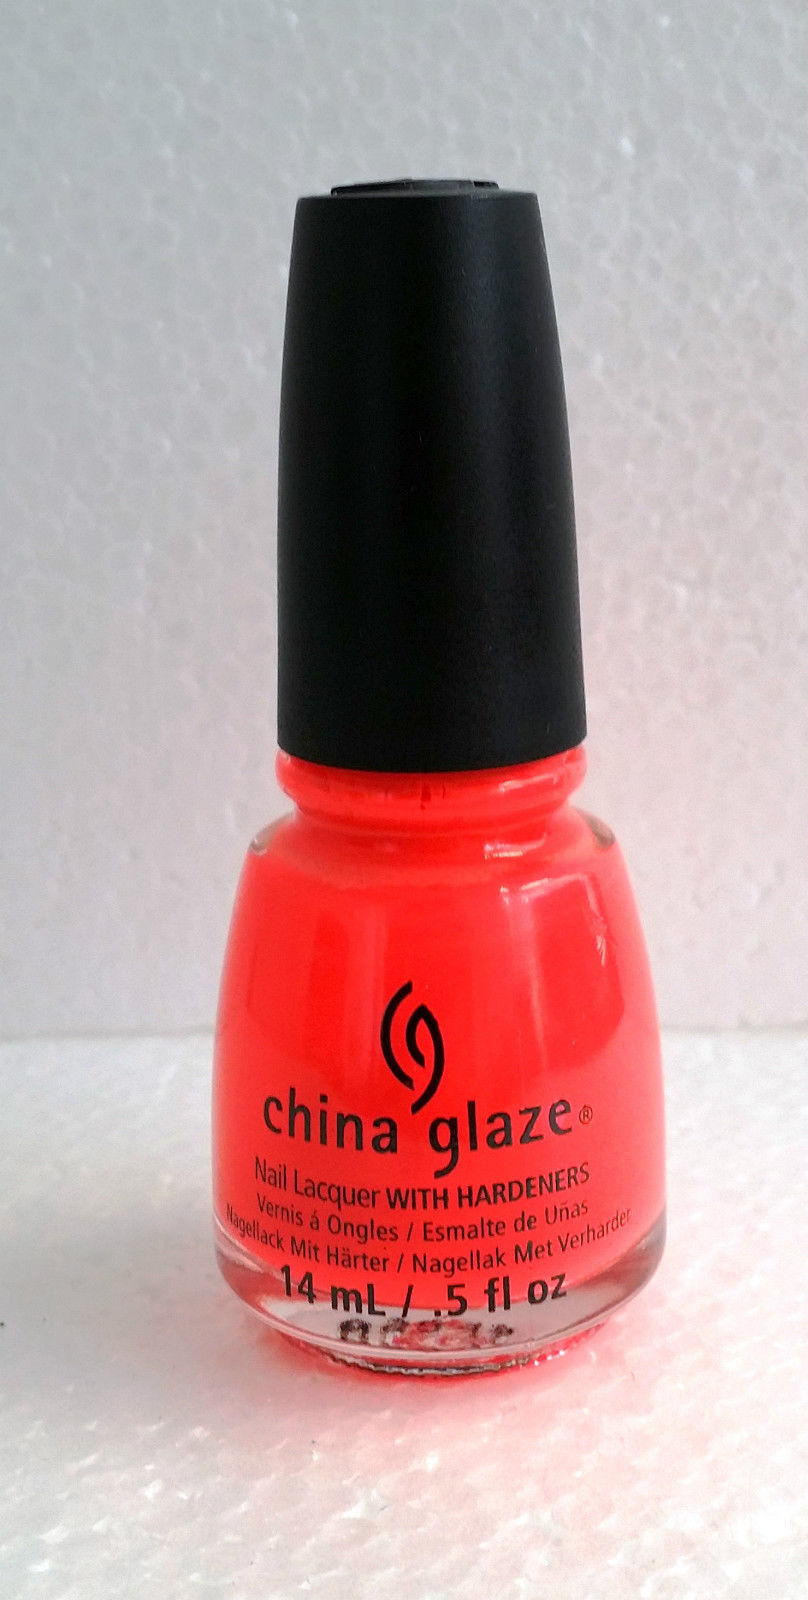 china glaze nail polish